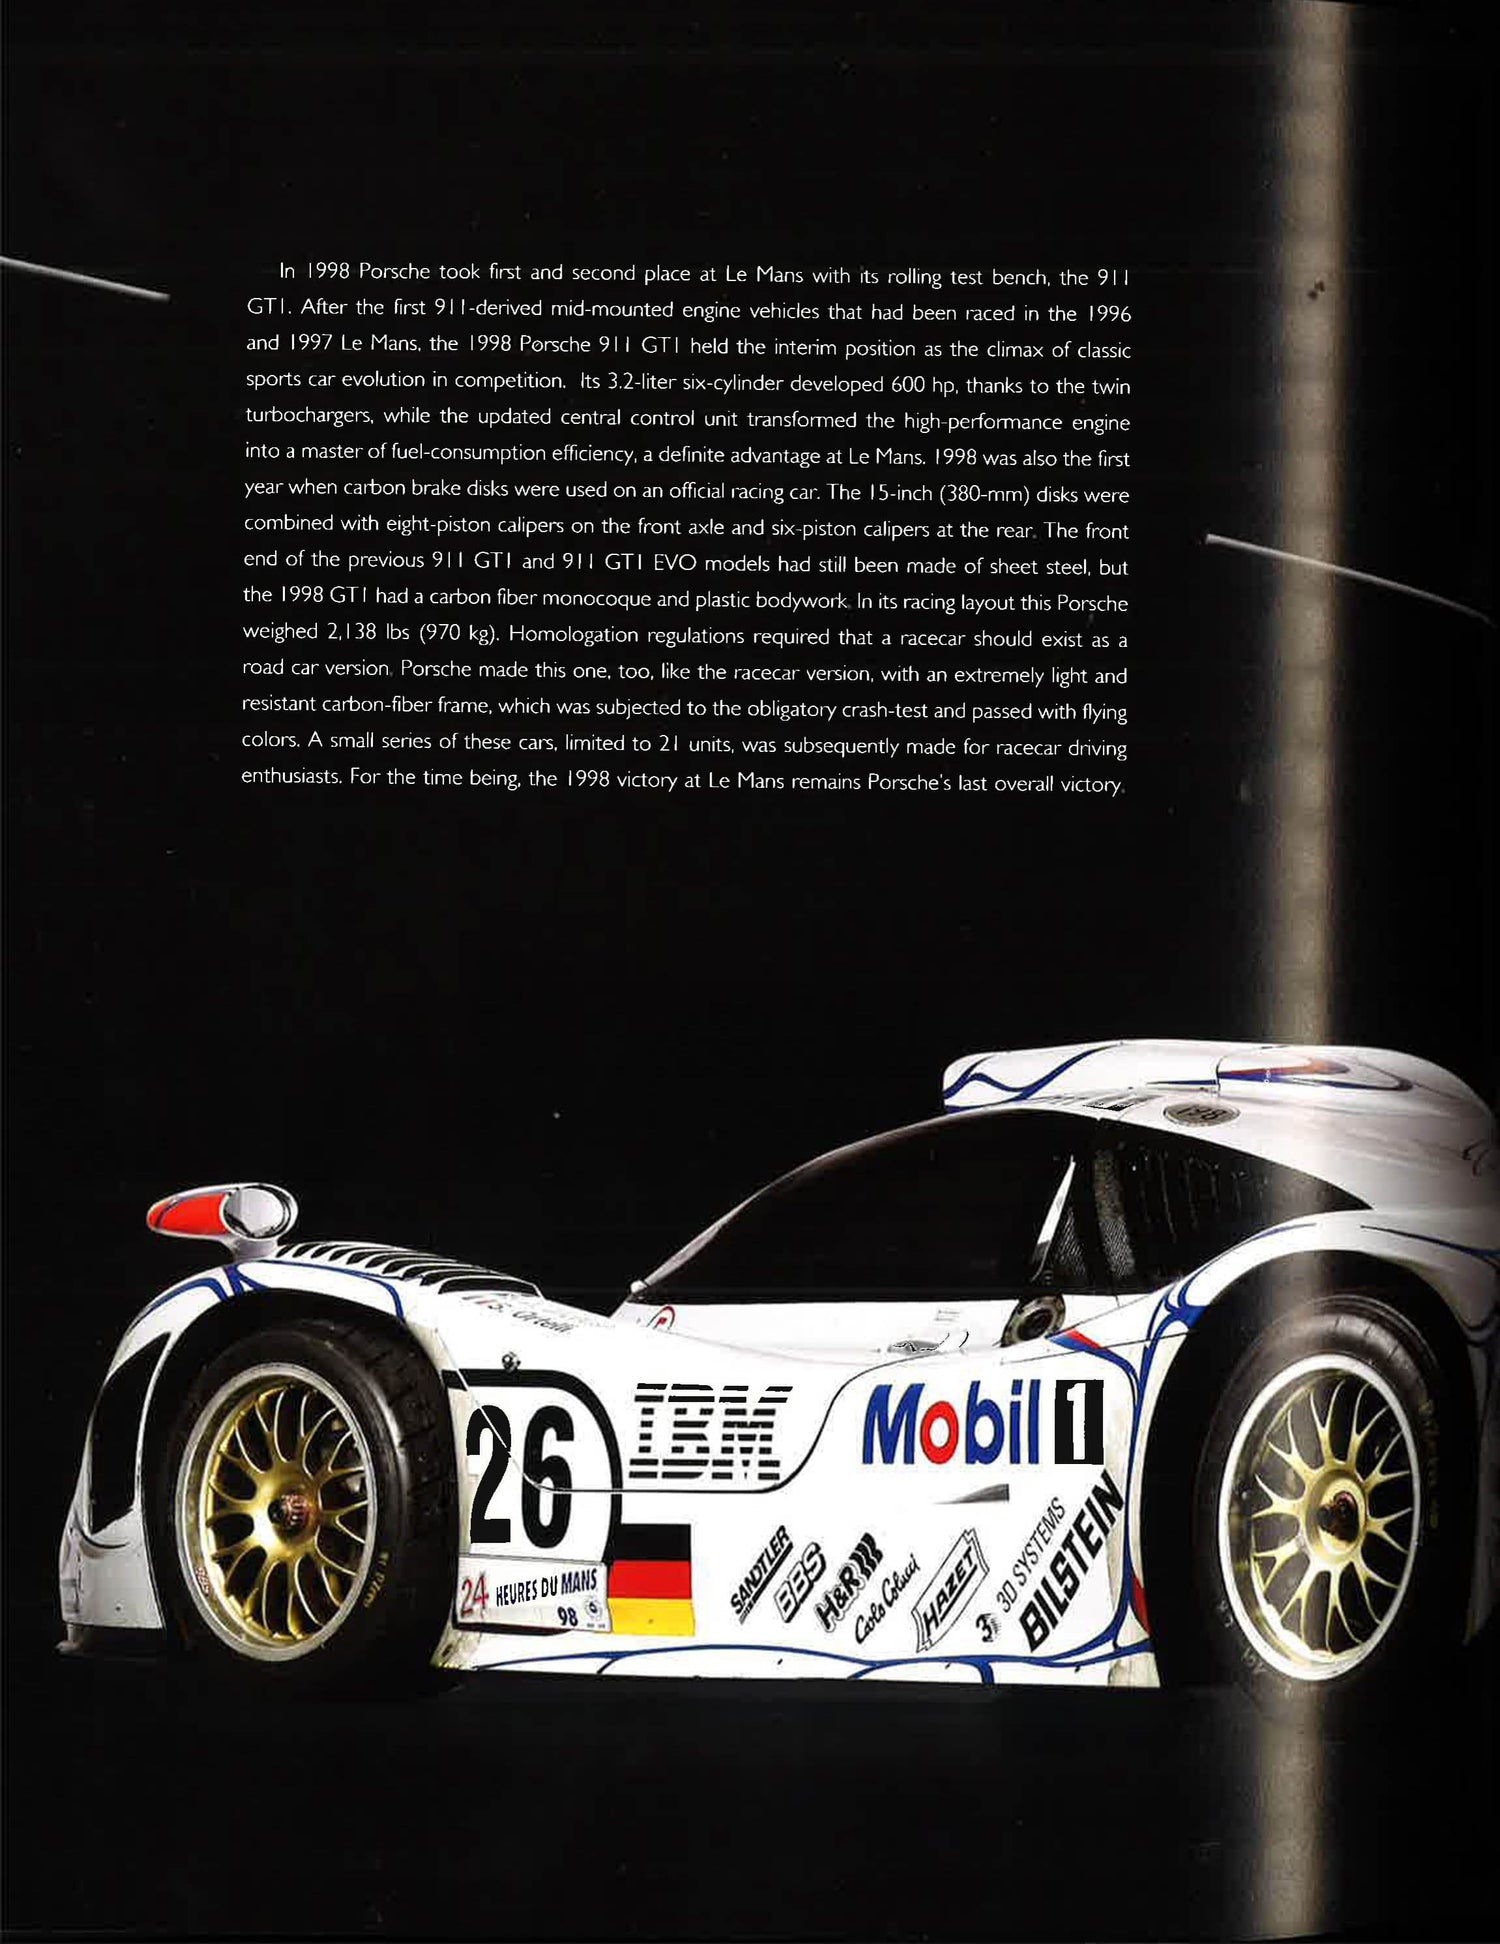 Porsche: The Story Of A German Legend